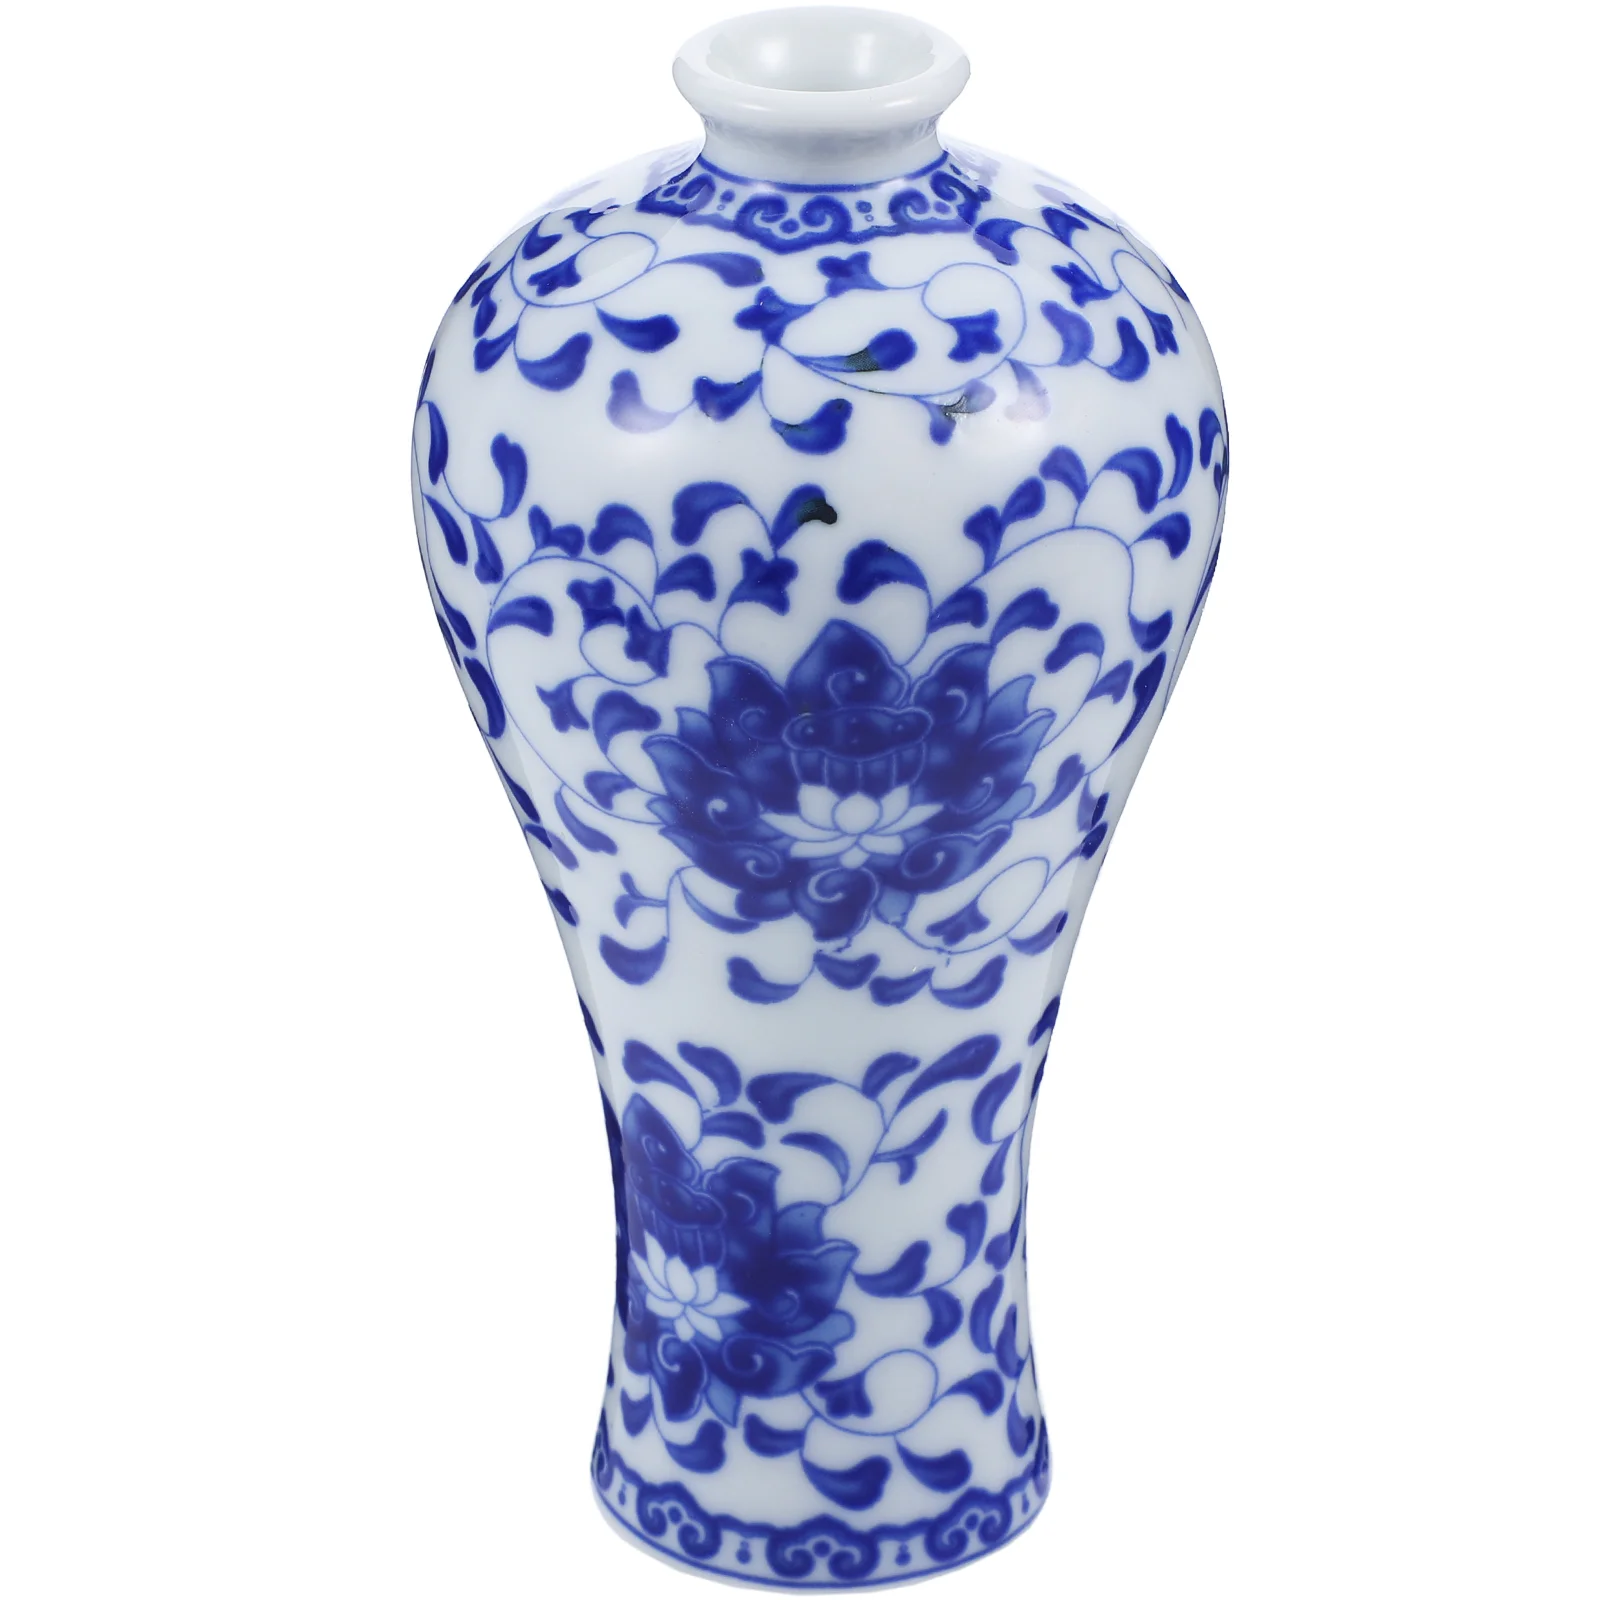 

Vase Flower Ceramic Pot Vases Succulent Pots Floral Planter Decorative Porcelain Chinese Modern White Planters Mini Blue Garden